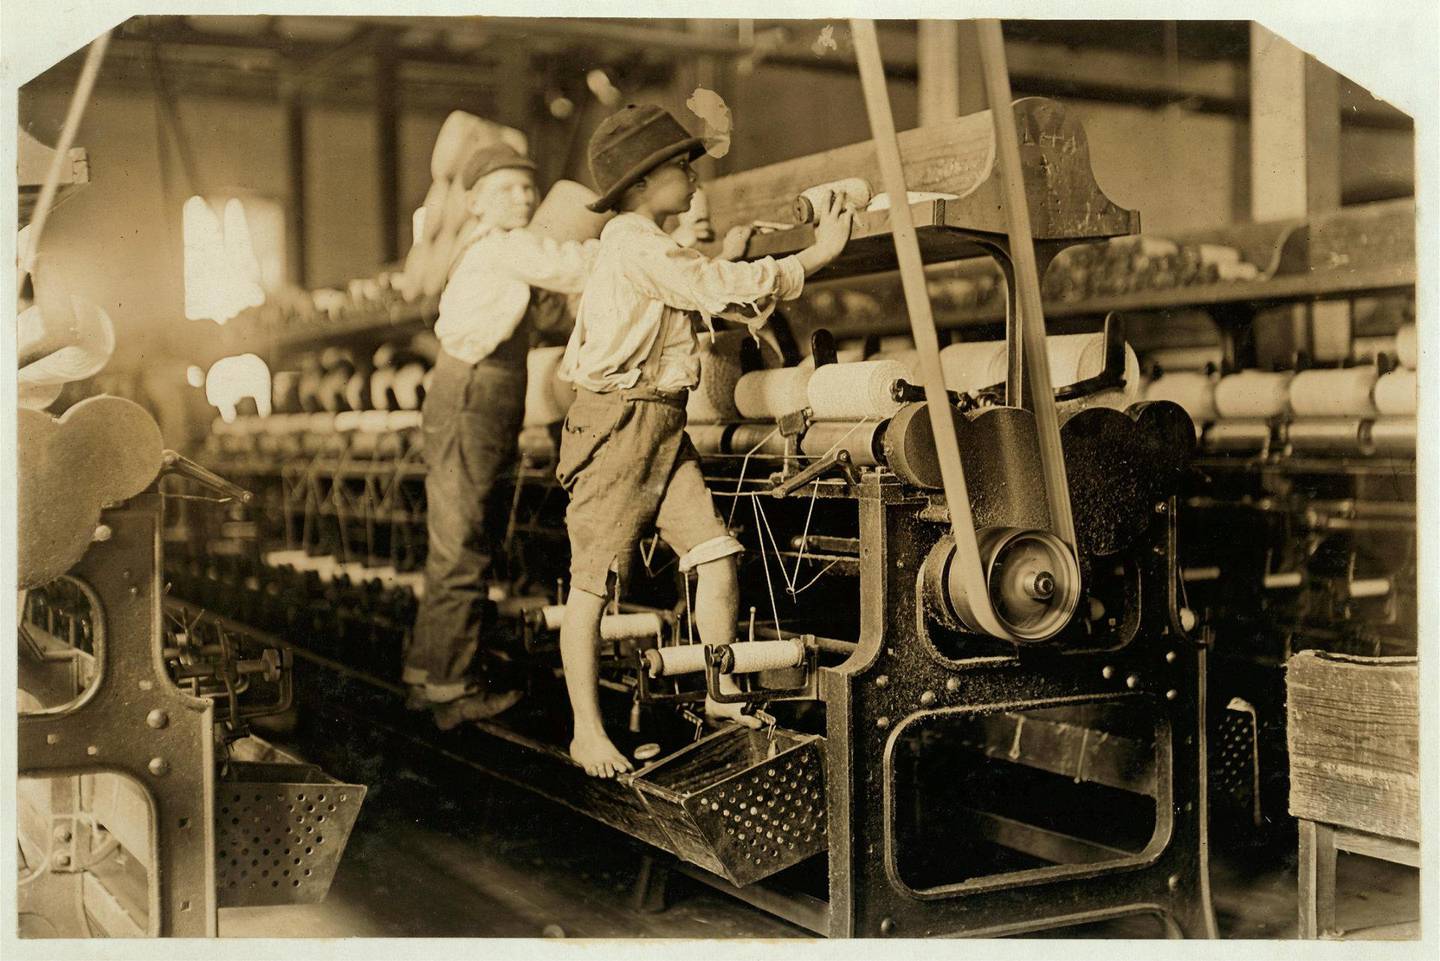 Barnearbeid var standarden heller enn unntaket. Disse amerikanske guttene jobber på tekstilfabrikk, et arbeid de ble regnet som ekstra egnet til siden deres små hender lett kom til mellom skarpe, bevegelige maskindeler som stadig kjørte seg fast. FOTO: WIKIPEDIA COMMONS